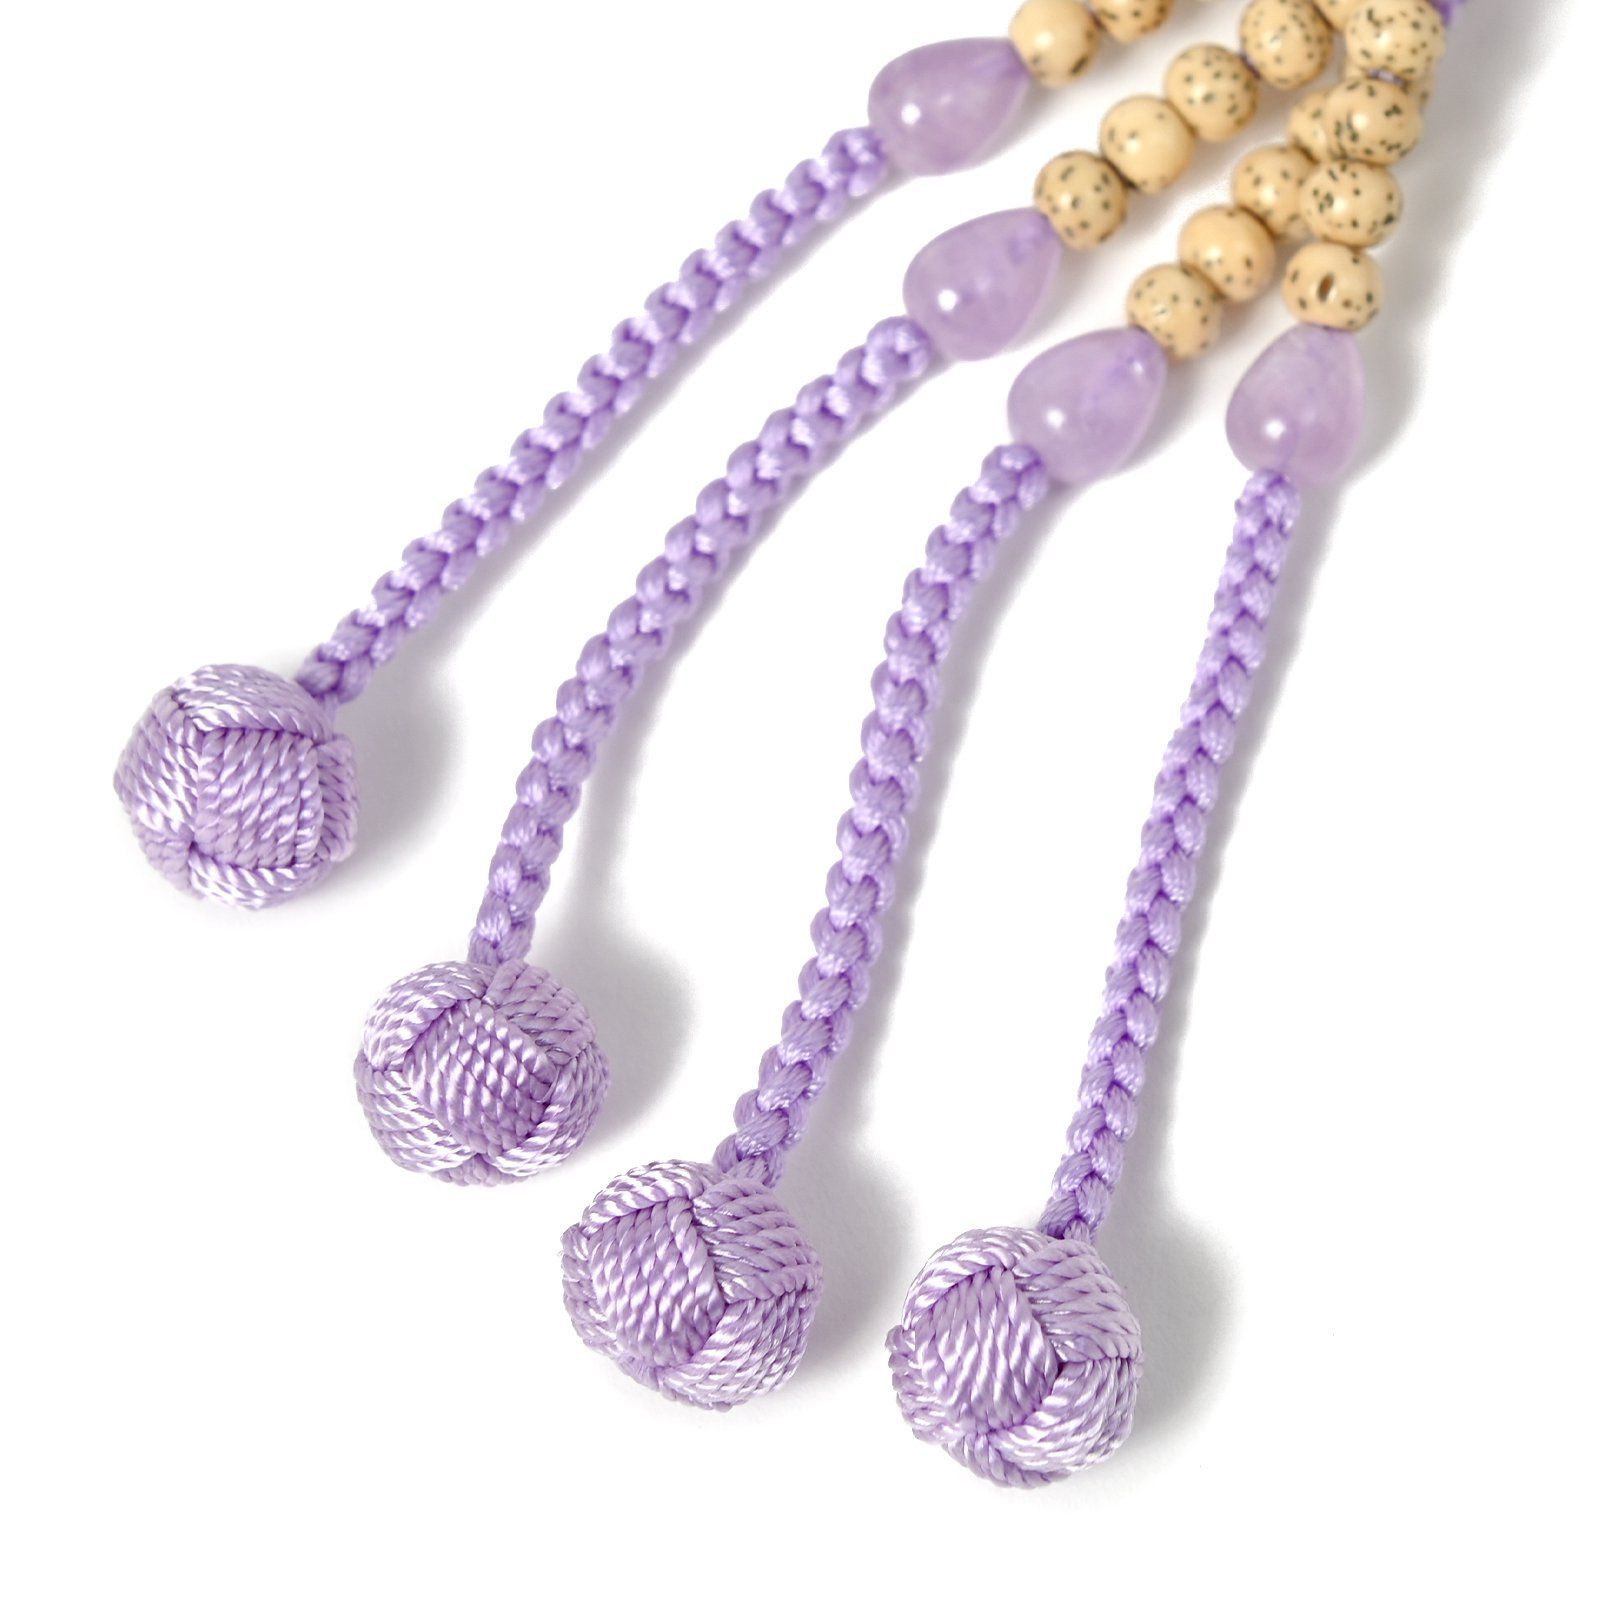 念珠 数珠 真言宗 女性用 本式念珠 八寸 桐箱入り 星月＋藤雲石＋紫色梵天 メルカリShops